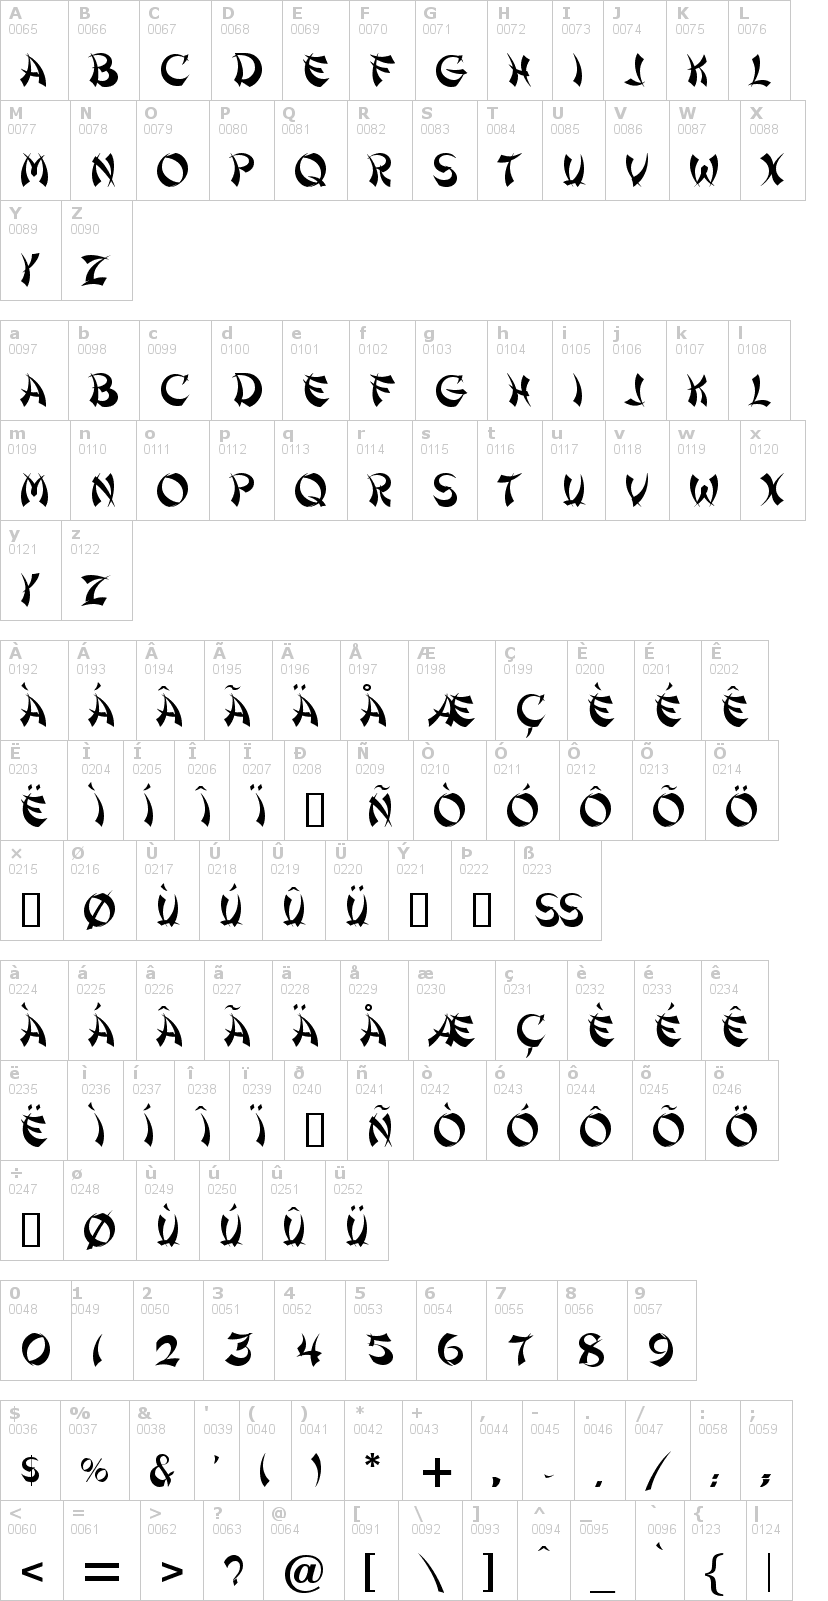 Lettere dell'alfabeto del font shanghai con le quali è possibile realizzare adesivi prespaziati